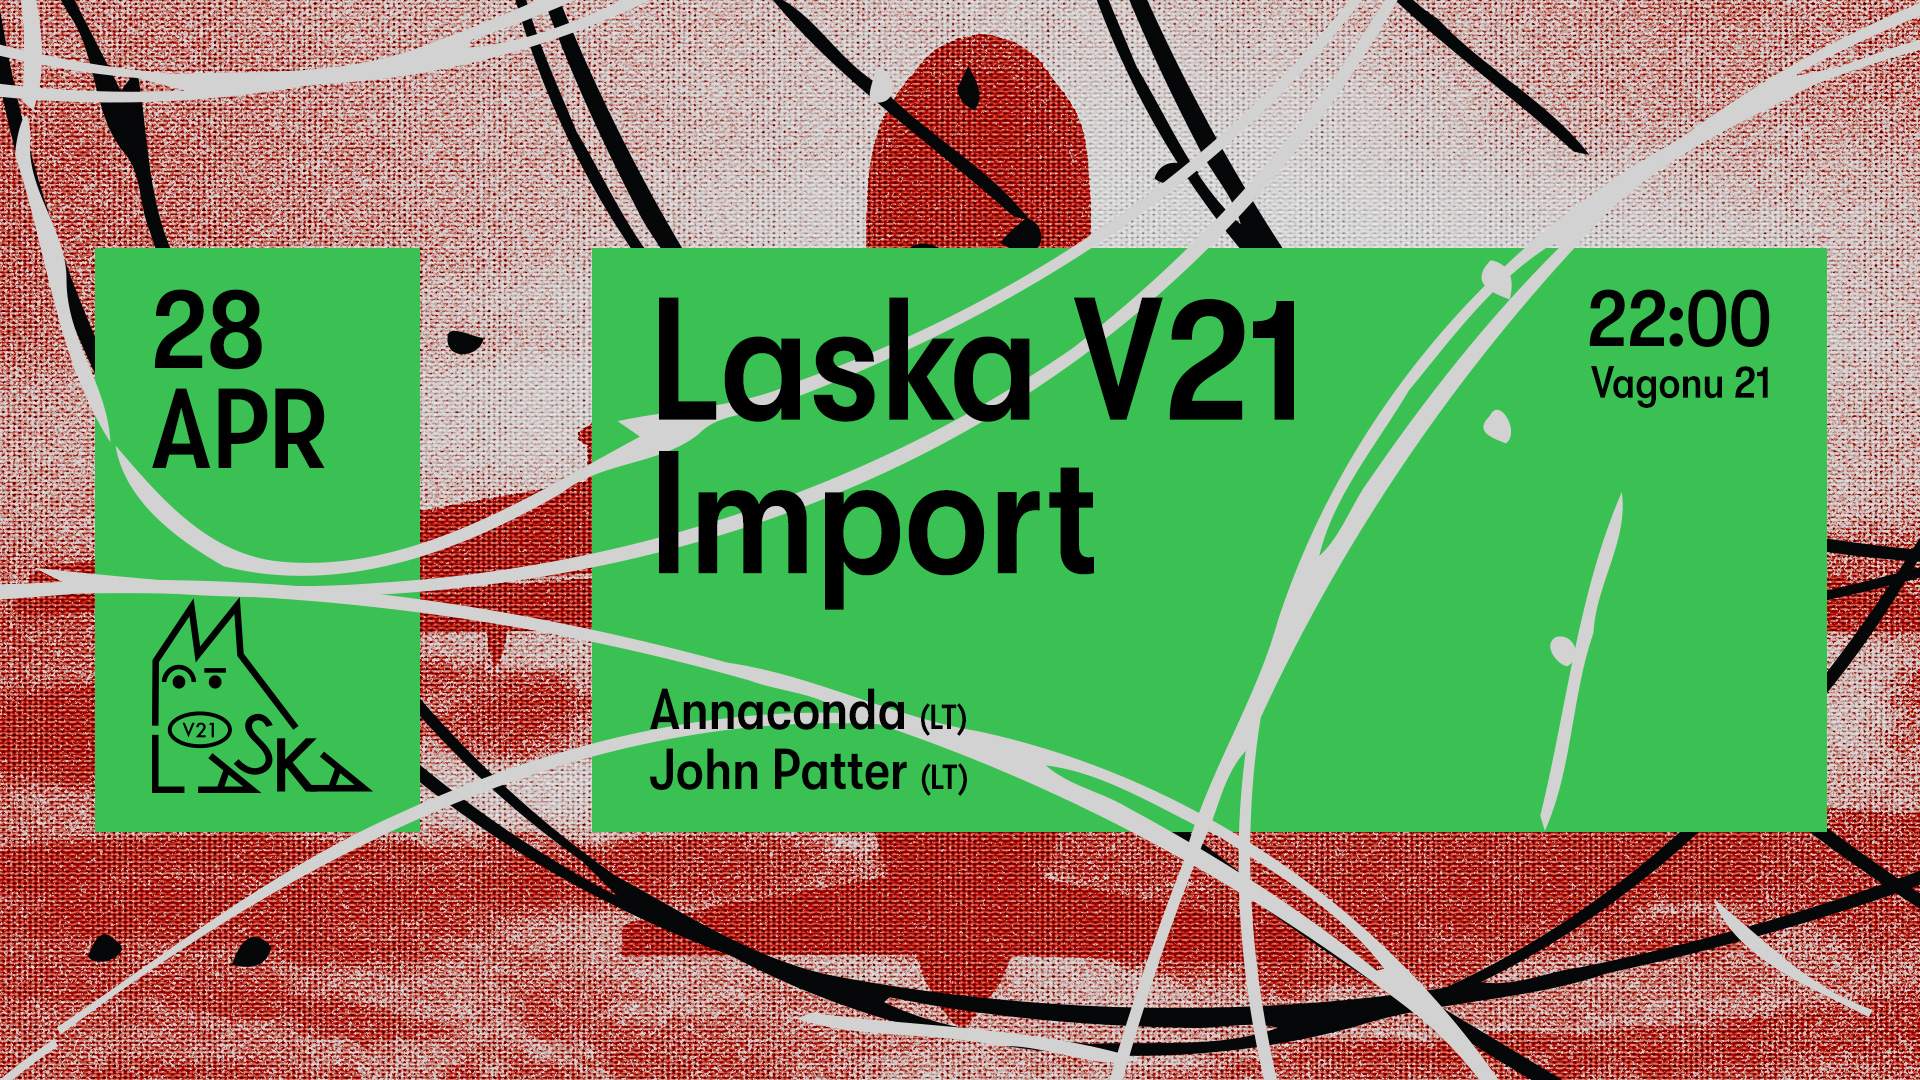 Laska V21 Import - Annaconda (LT) / John Patter (LT) - フライヤー表